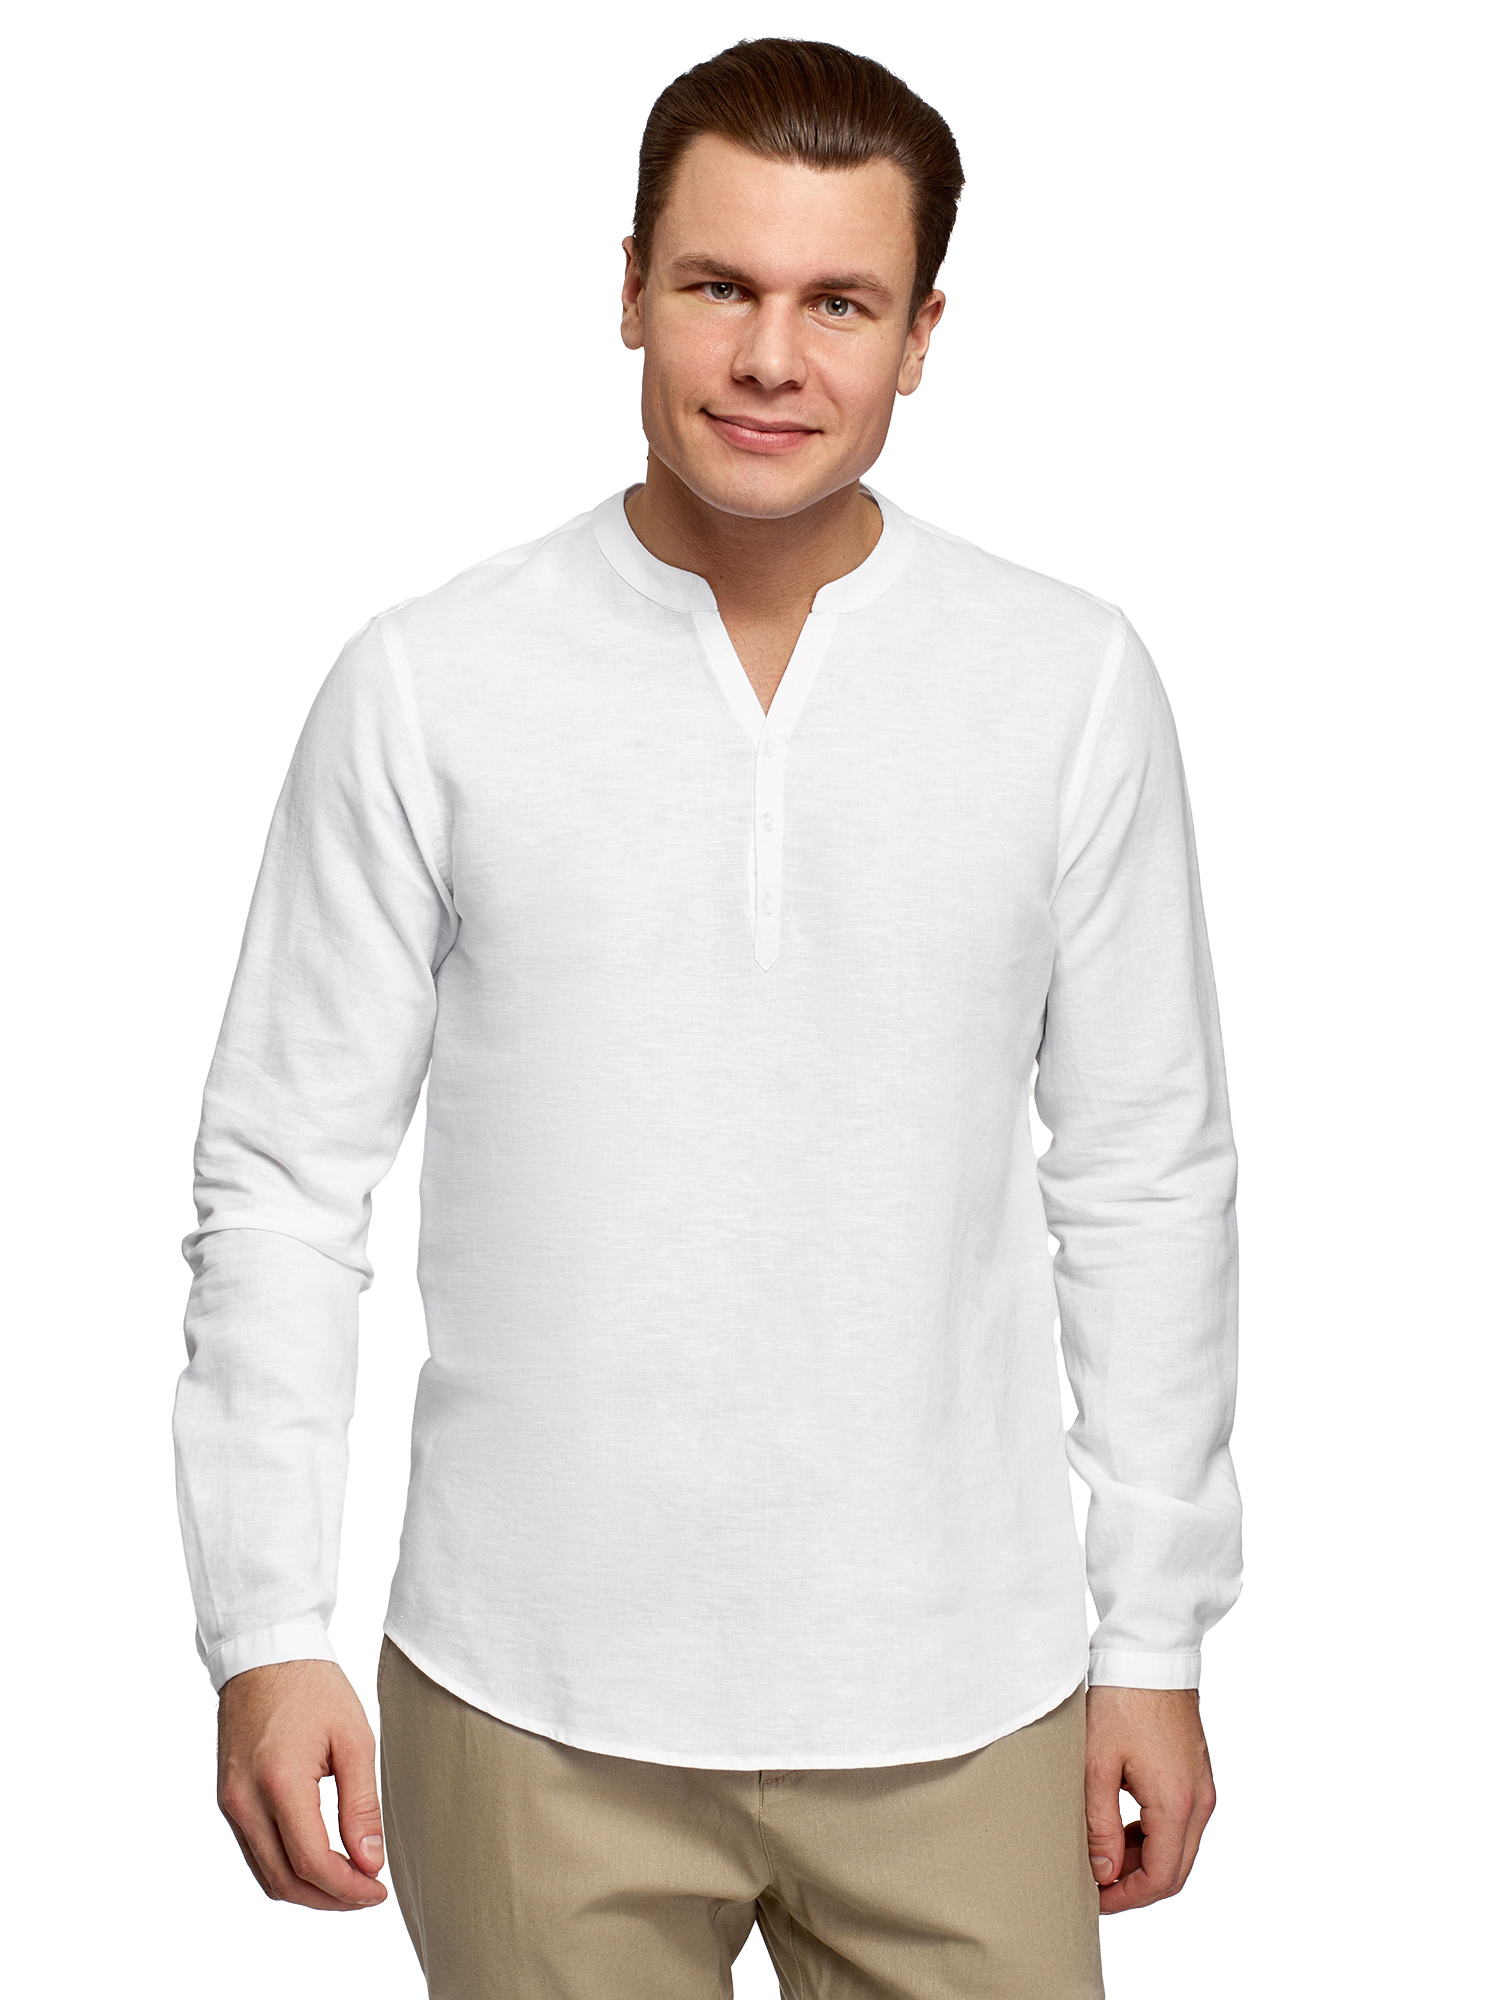 Рубашка мужская oodji 3B320002M-1 белая L